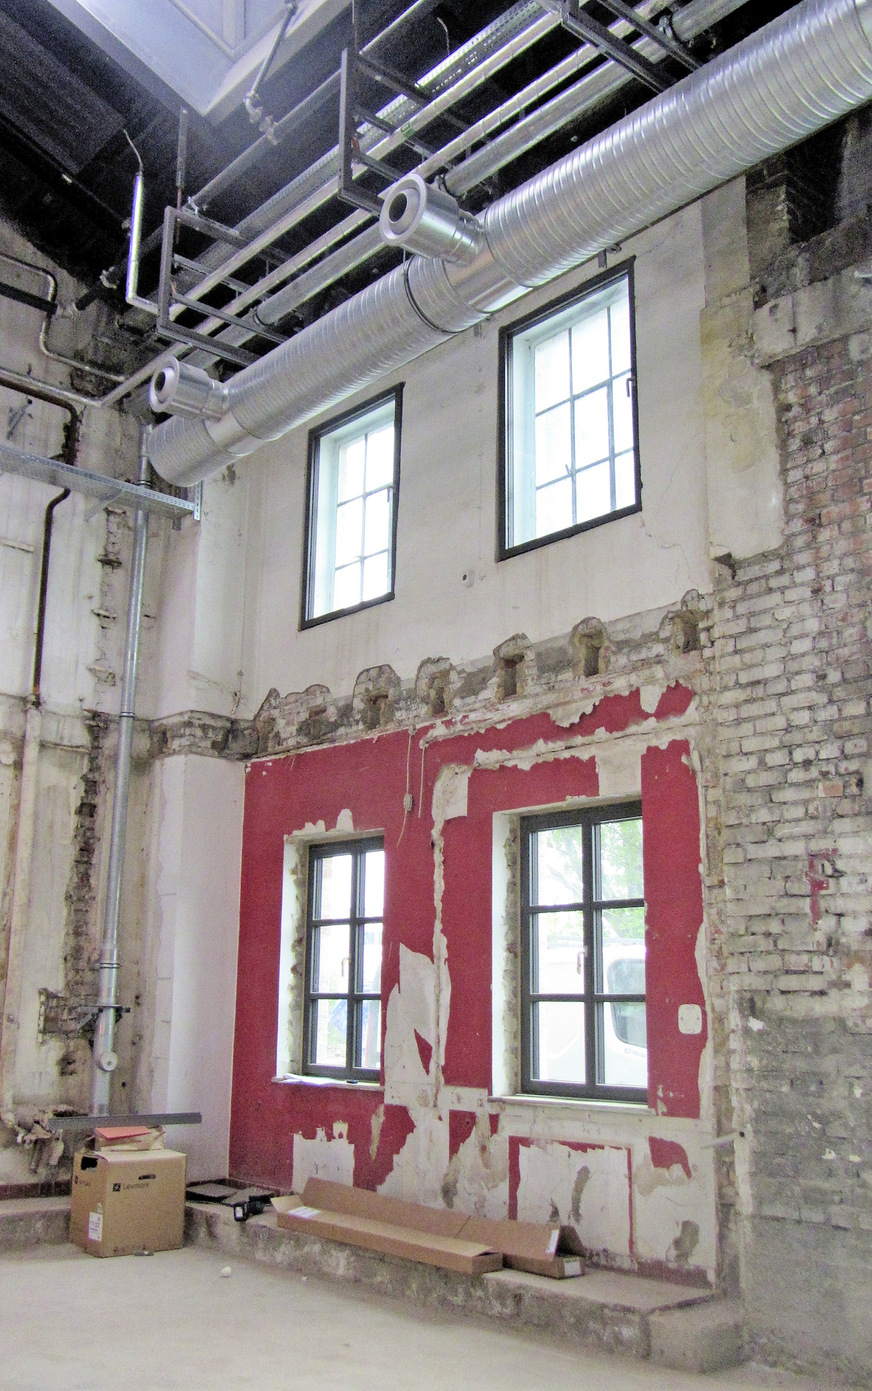 Um den historischen Industrie-Charme des Gebäudes zu bewahren, wurden die Spuren der Zeit bewusst sichtbar belassen. Auch die Luftverteilung ist in Sichtbauweise ausgeführt.